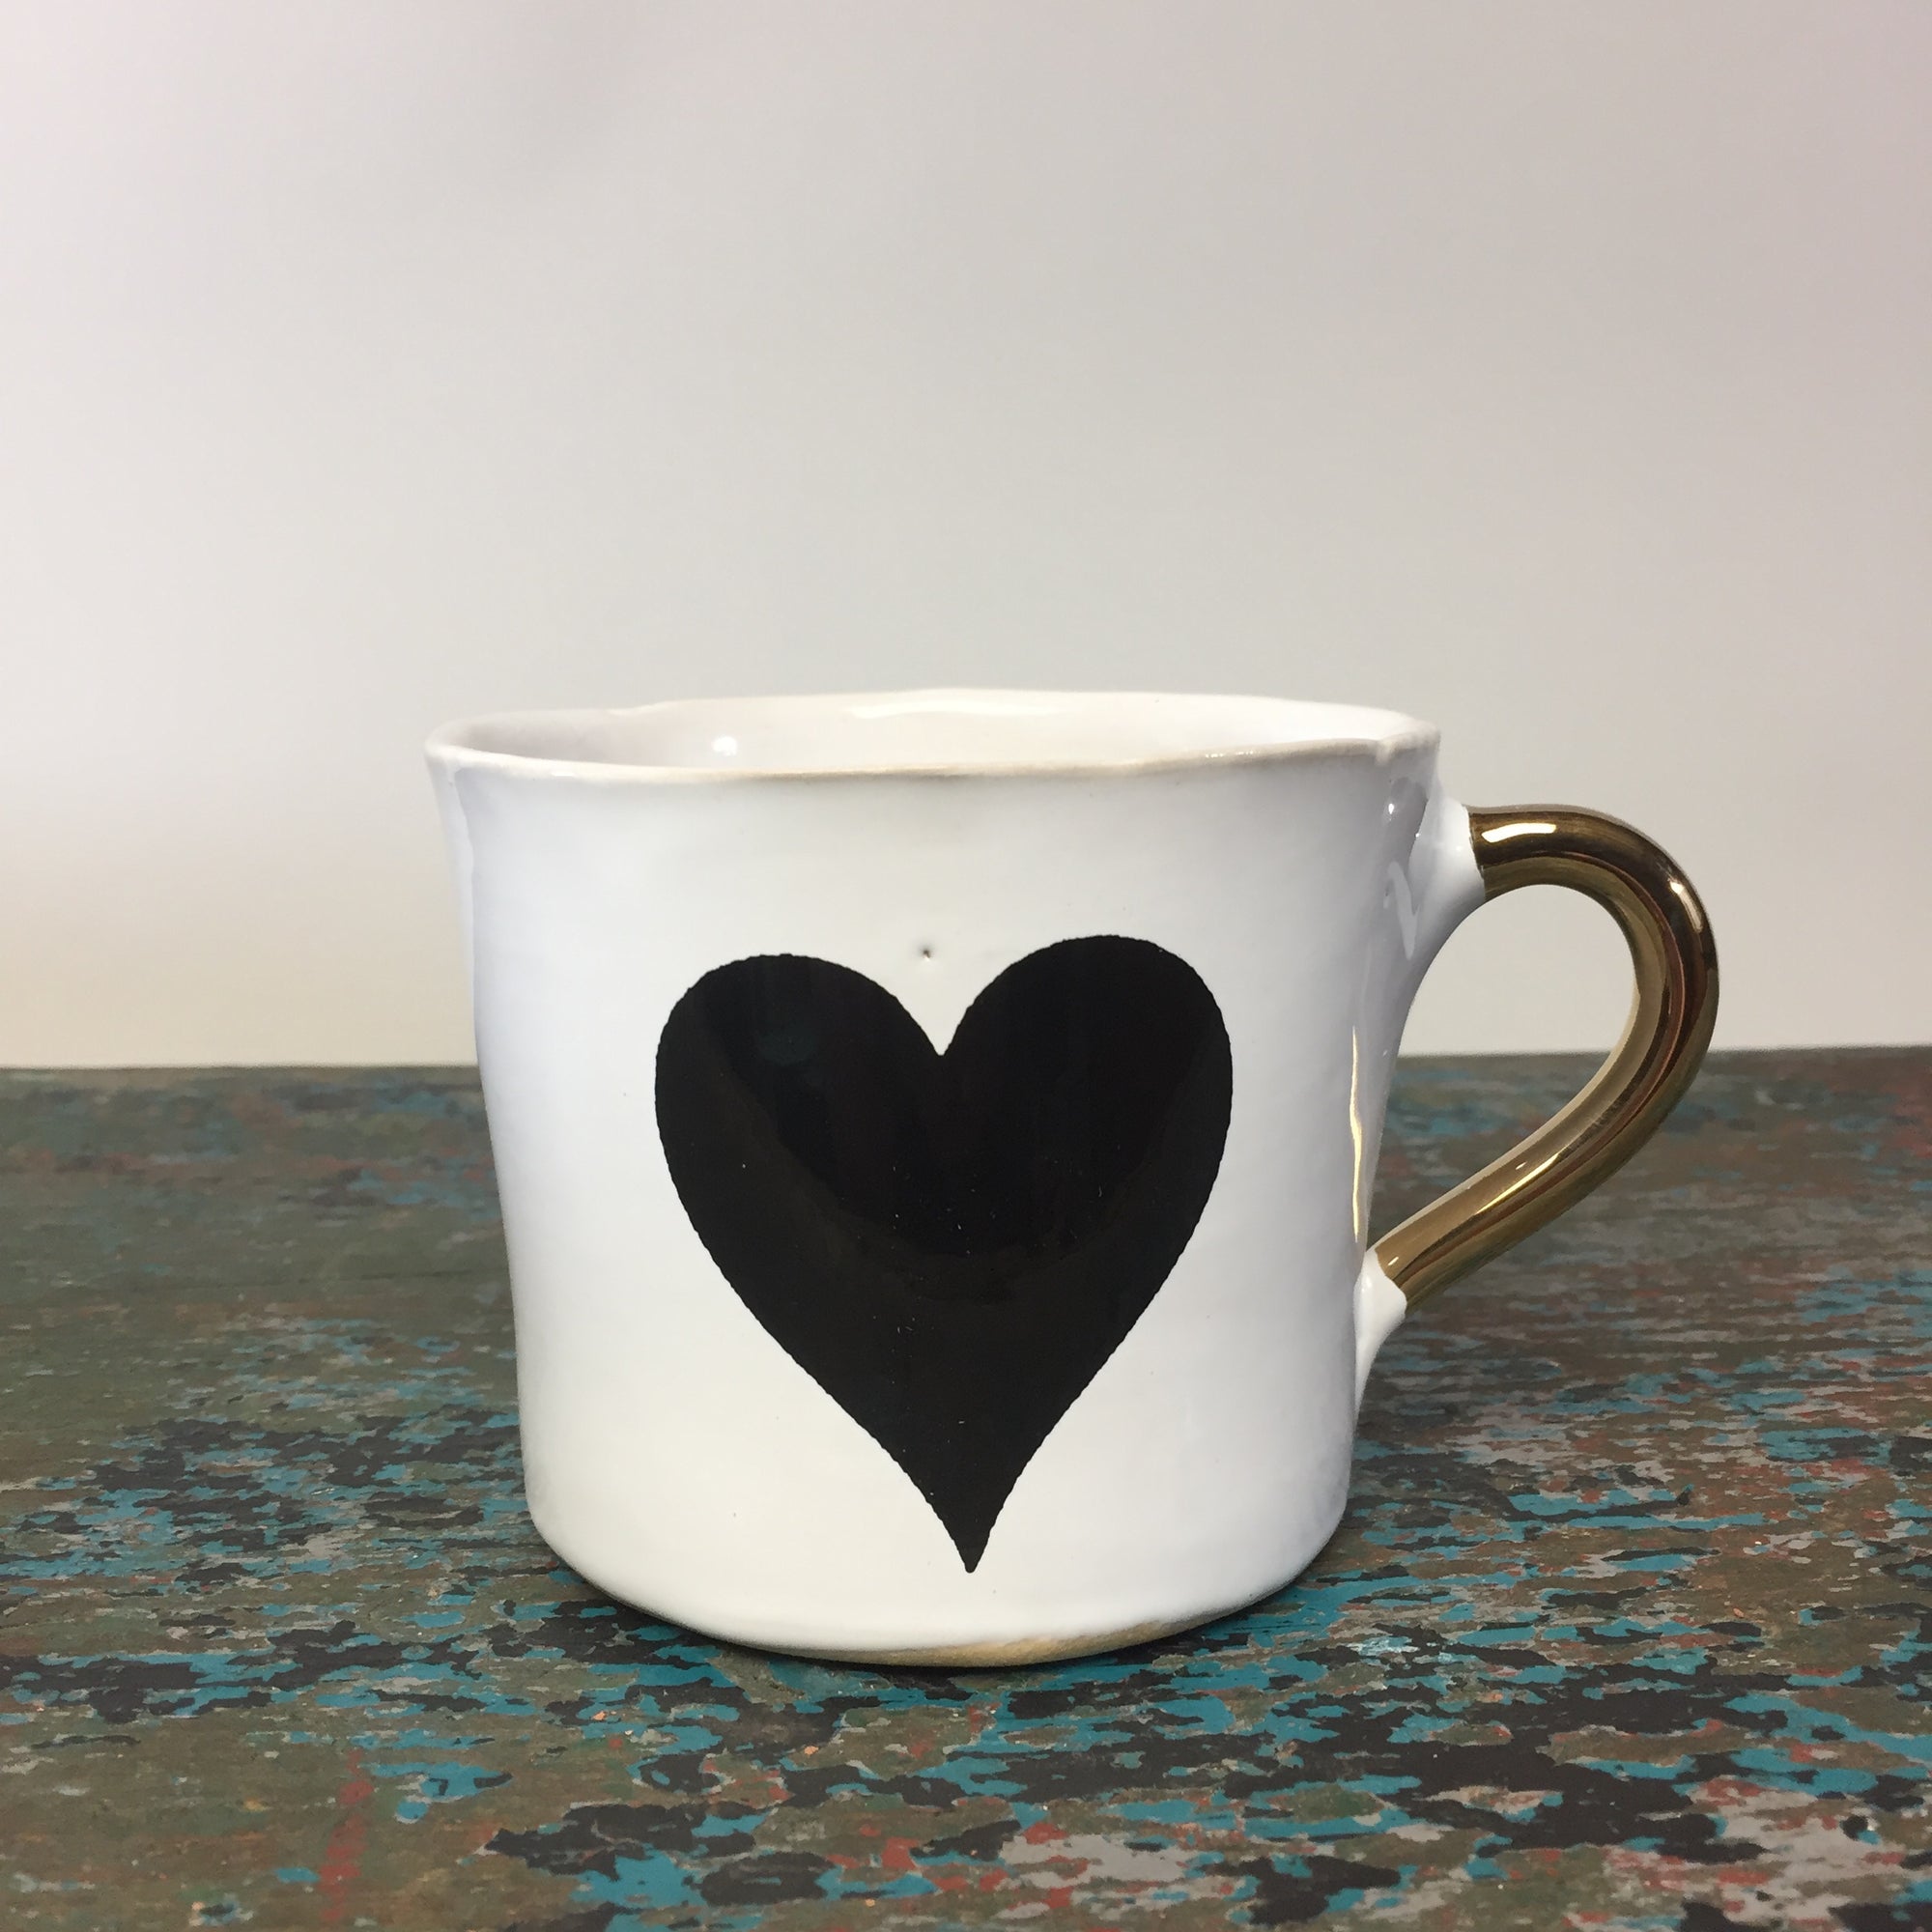 Kuhn Keramik Heart 'Glam' Medium Coffee Cup